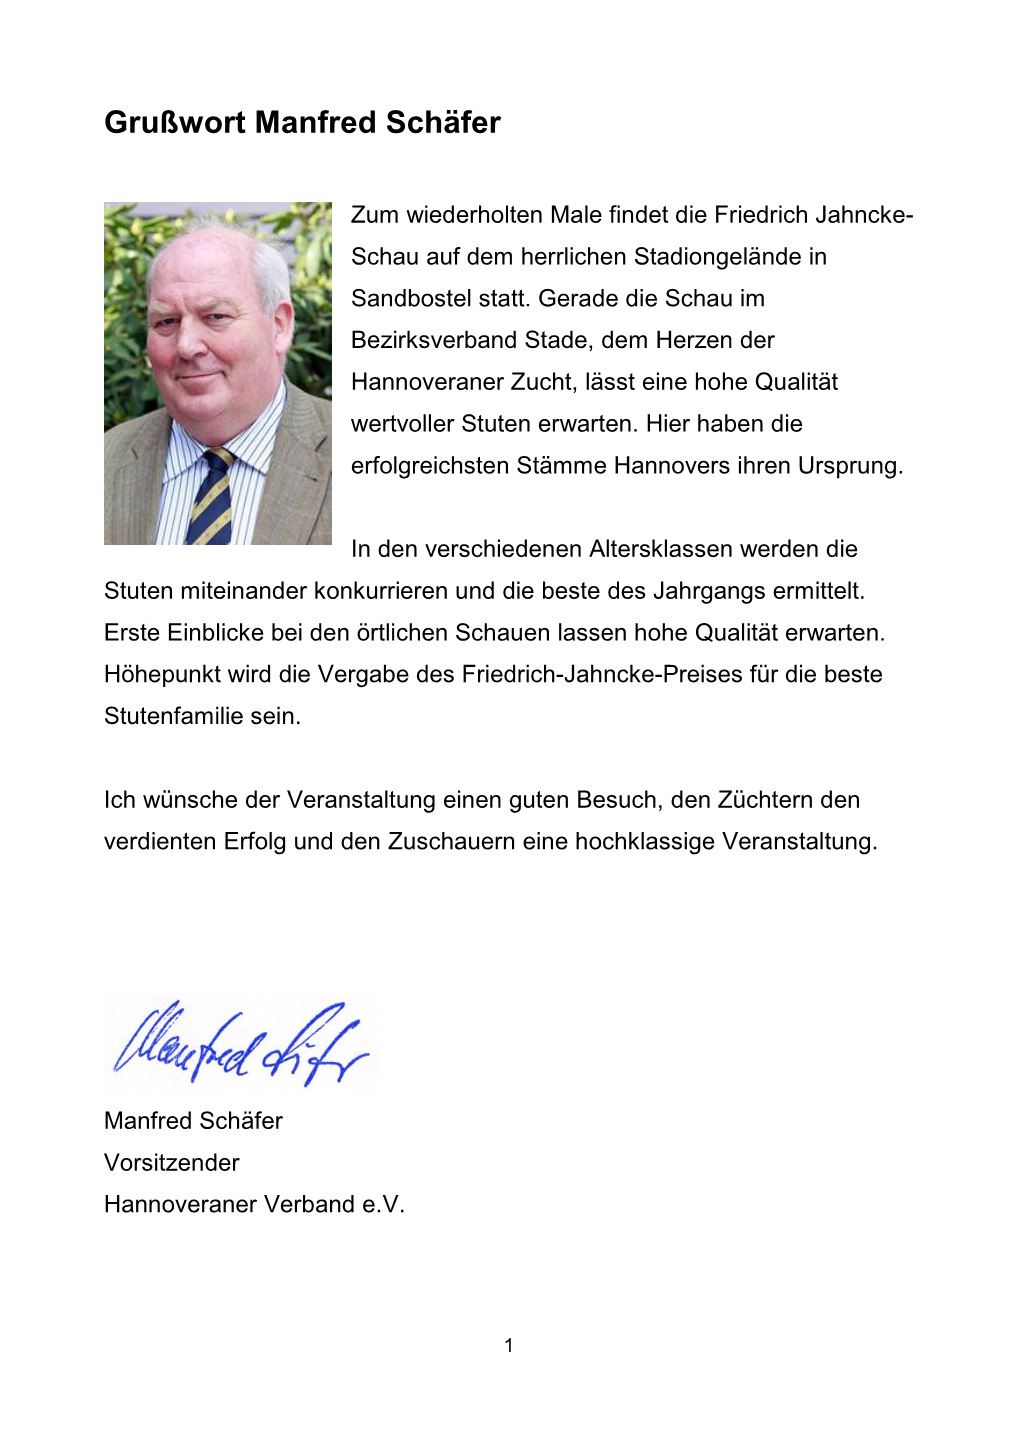 Katalog Der Friedrich Jahncke-Schau